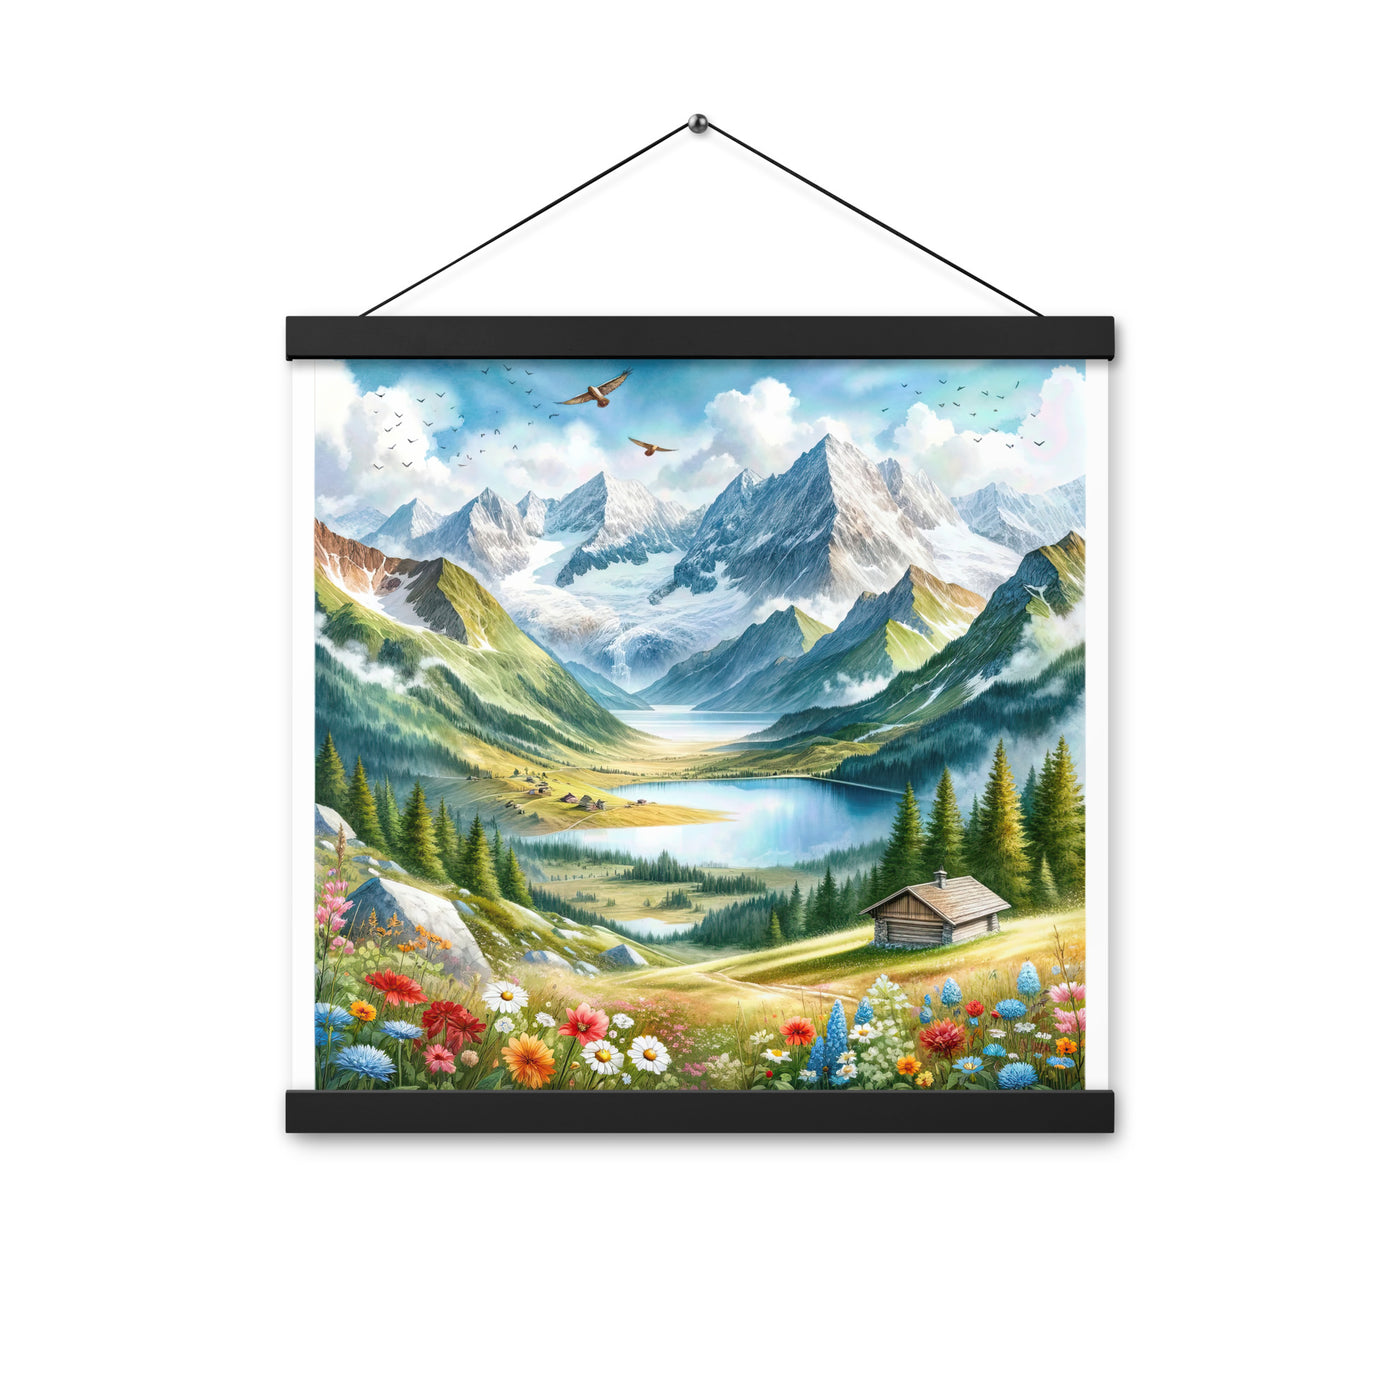 Quadratisches Aquarell der Alpen, Berge mit schneebedeckten Spitzen - Premium Poster mit Aufhängung berge xxx yyy zzz 40.6 x 40.6 cm